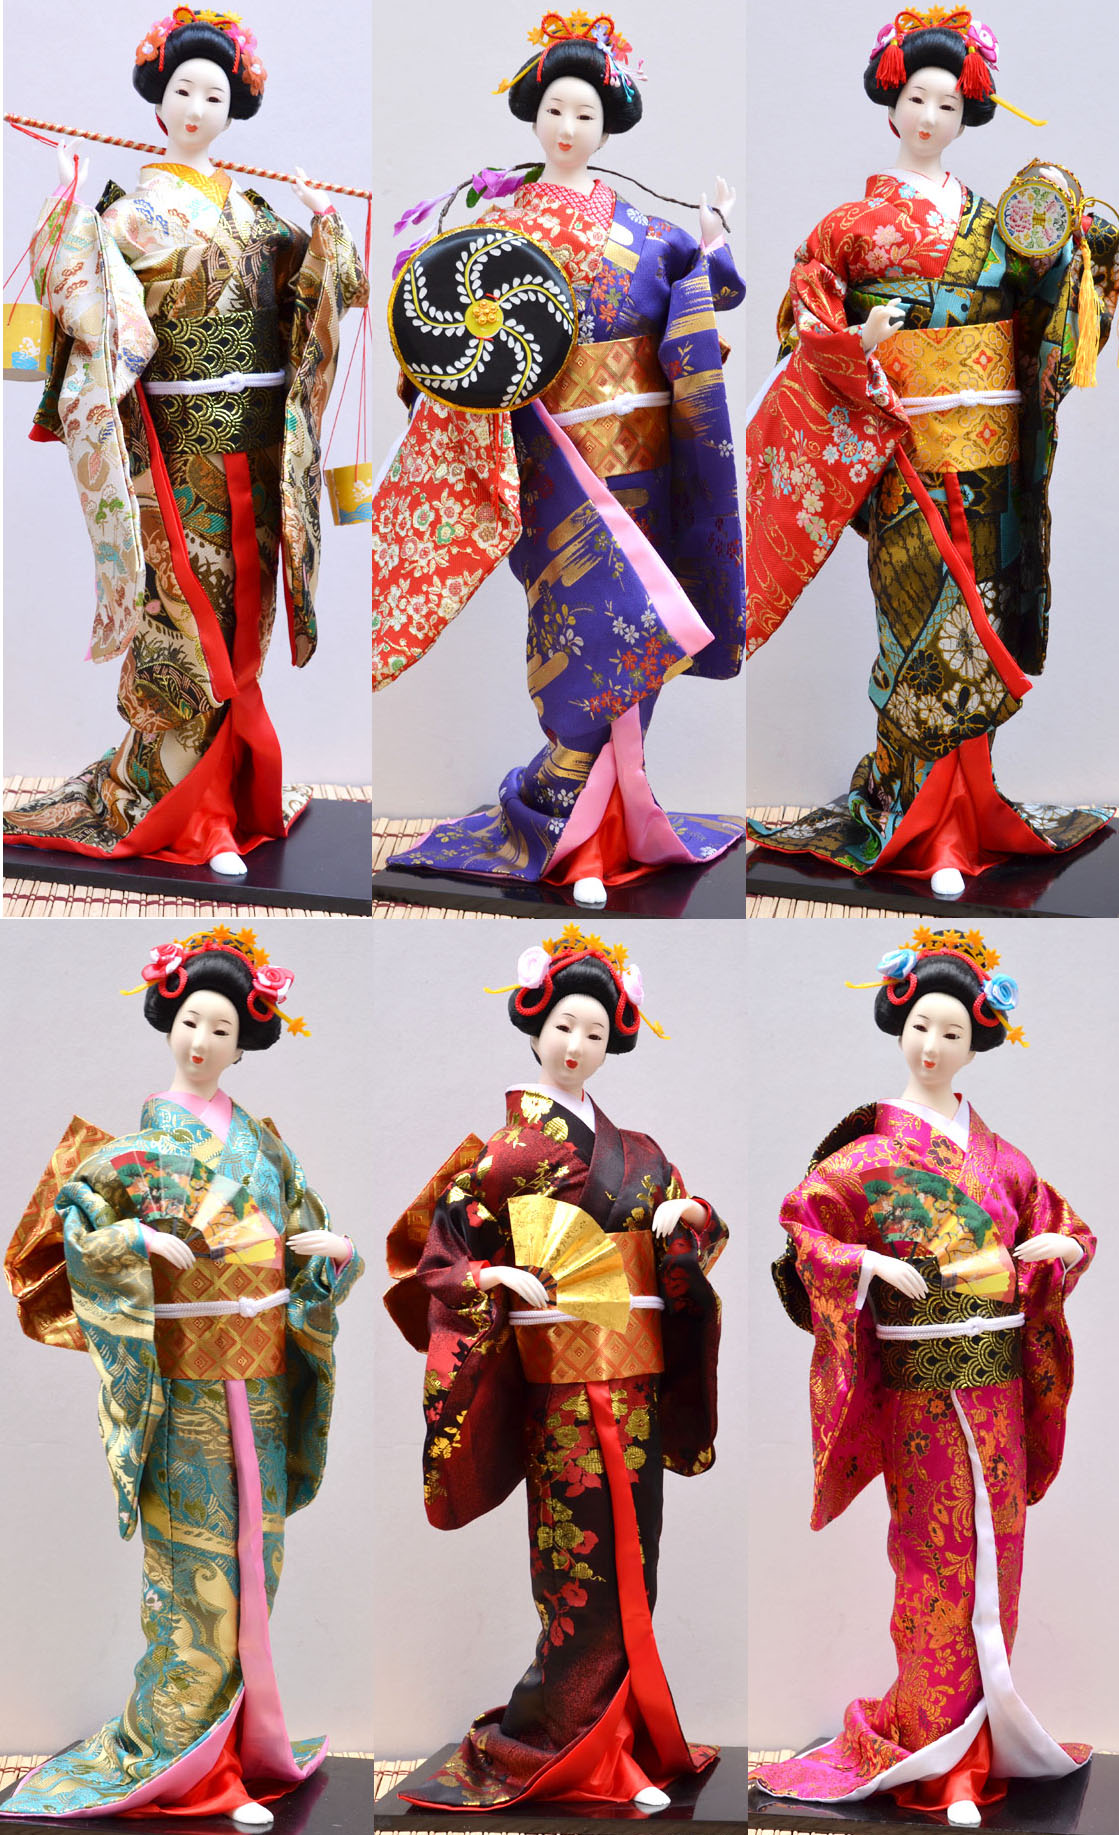 查看淘宝艺妓日本人偶娃娃 娟人和服娃娃日式桌面摆件家居礼品22寸